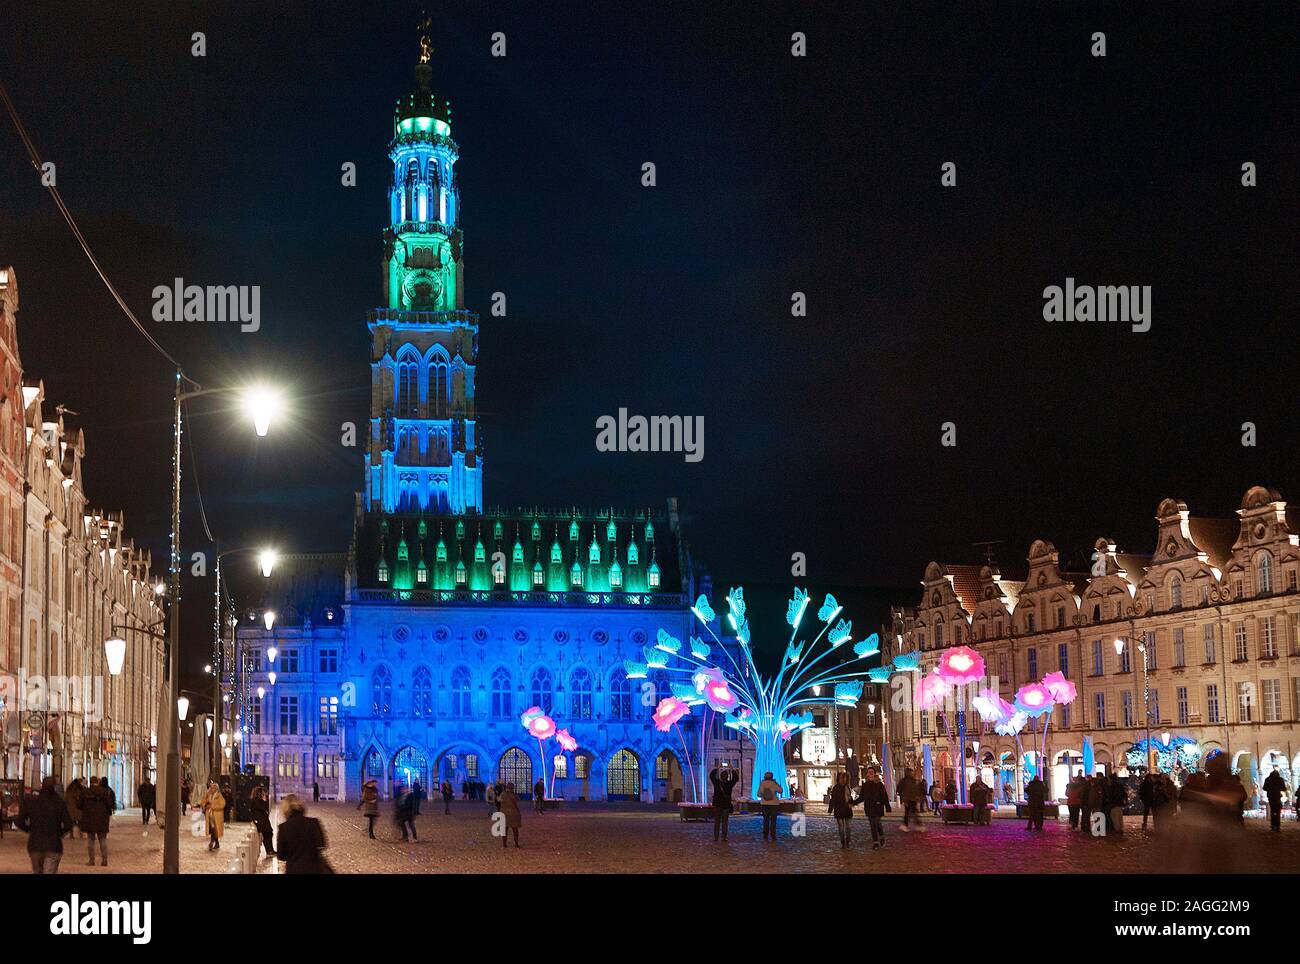 Hôtel de ville avec l'éclairage bleu et vert, Petite place place des héros, Arras, dans le Nord de la France Banque D'Images